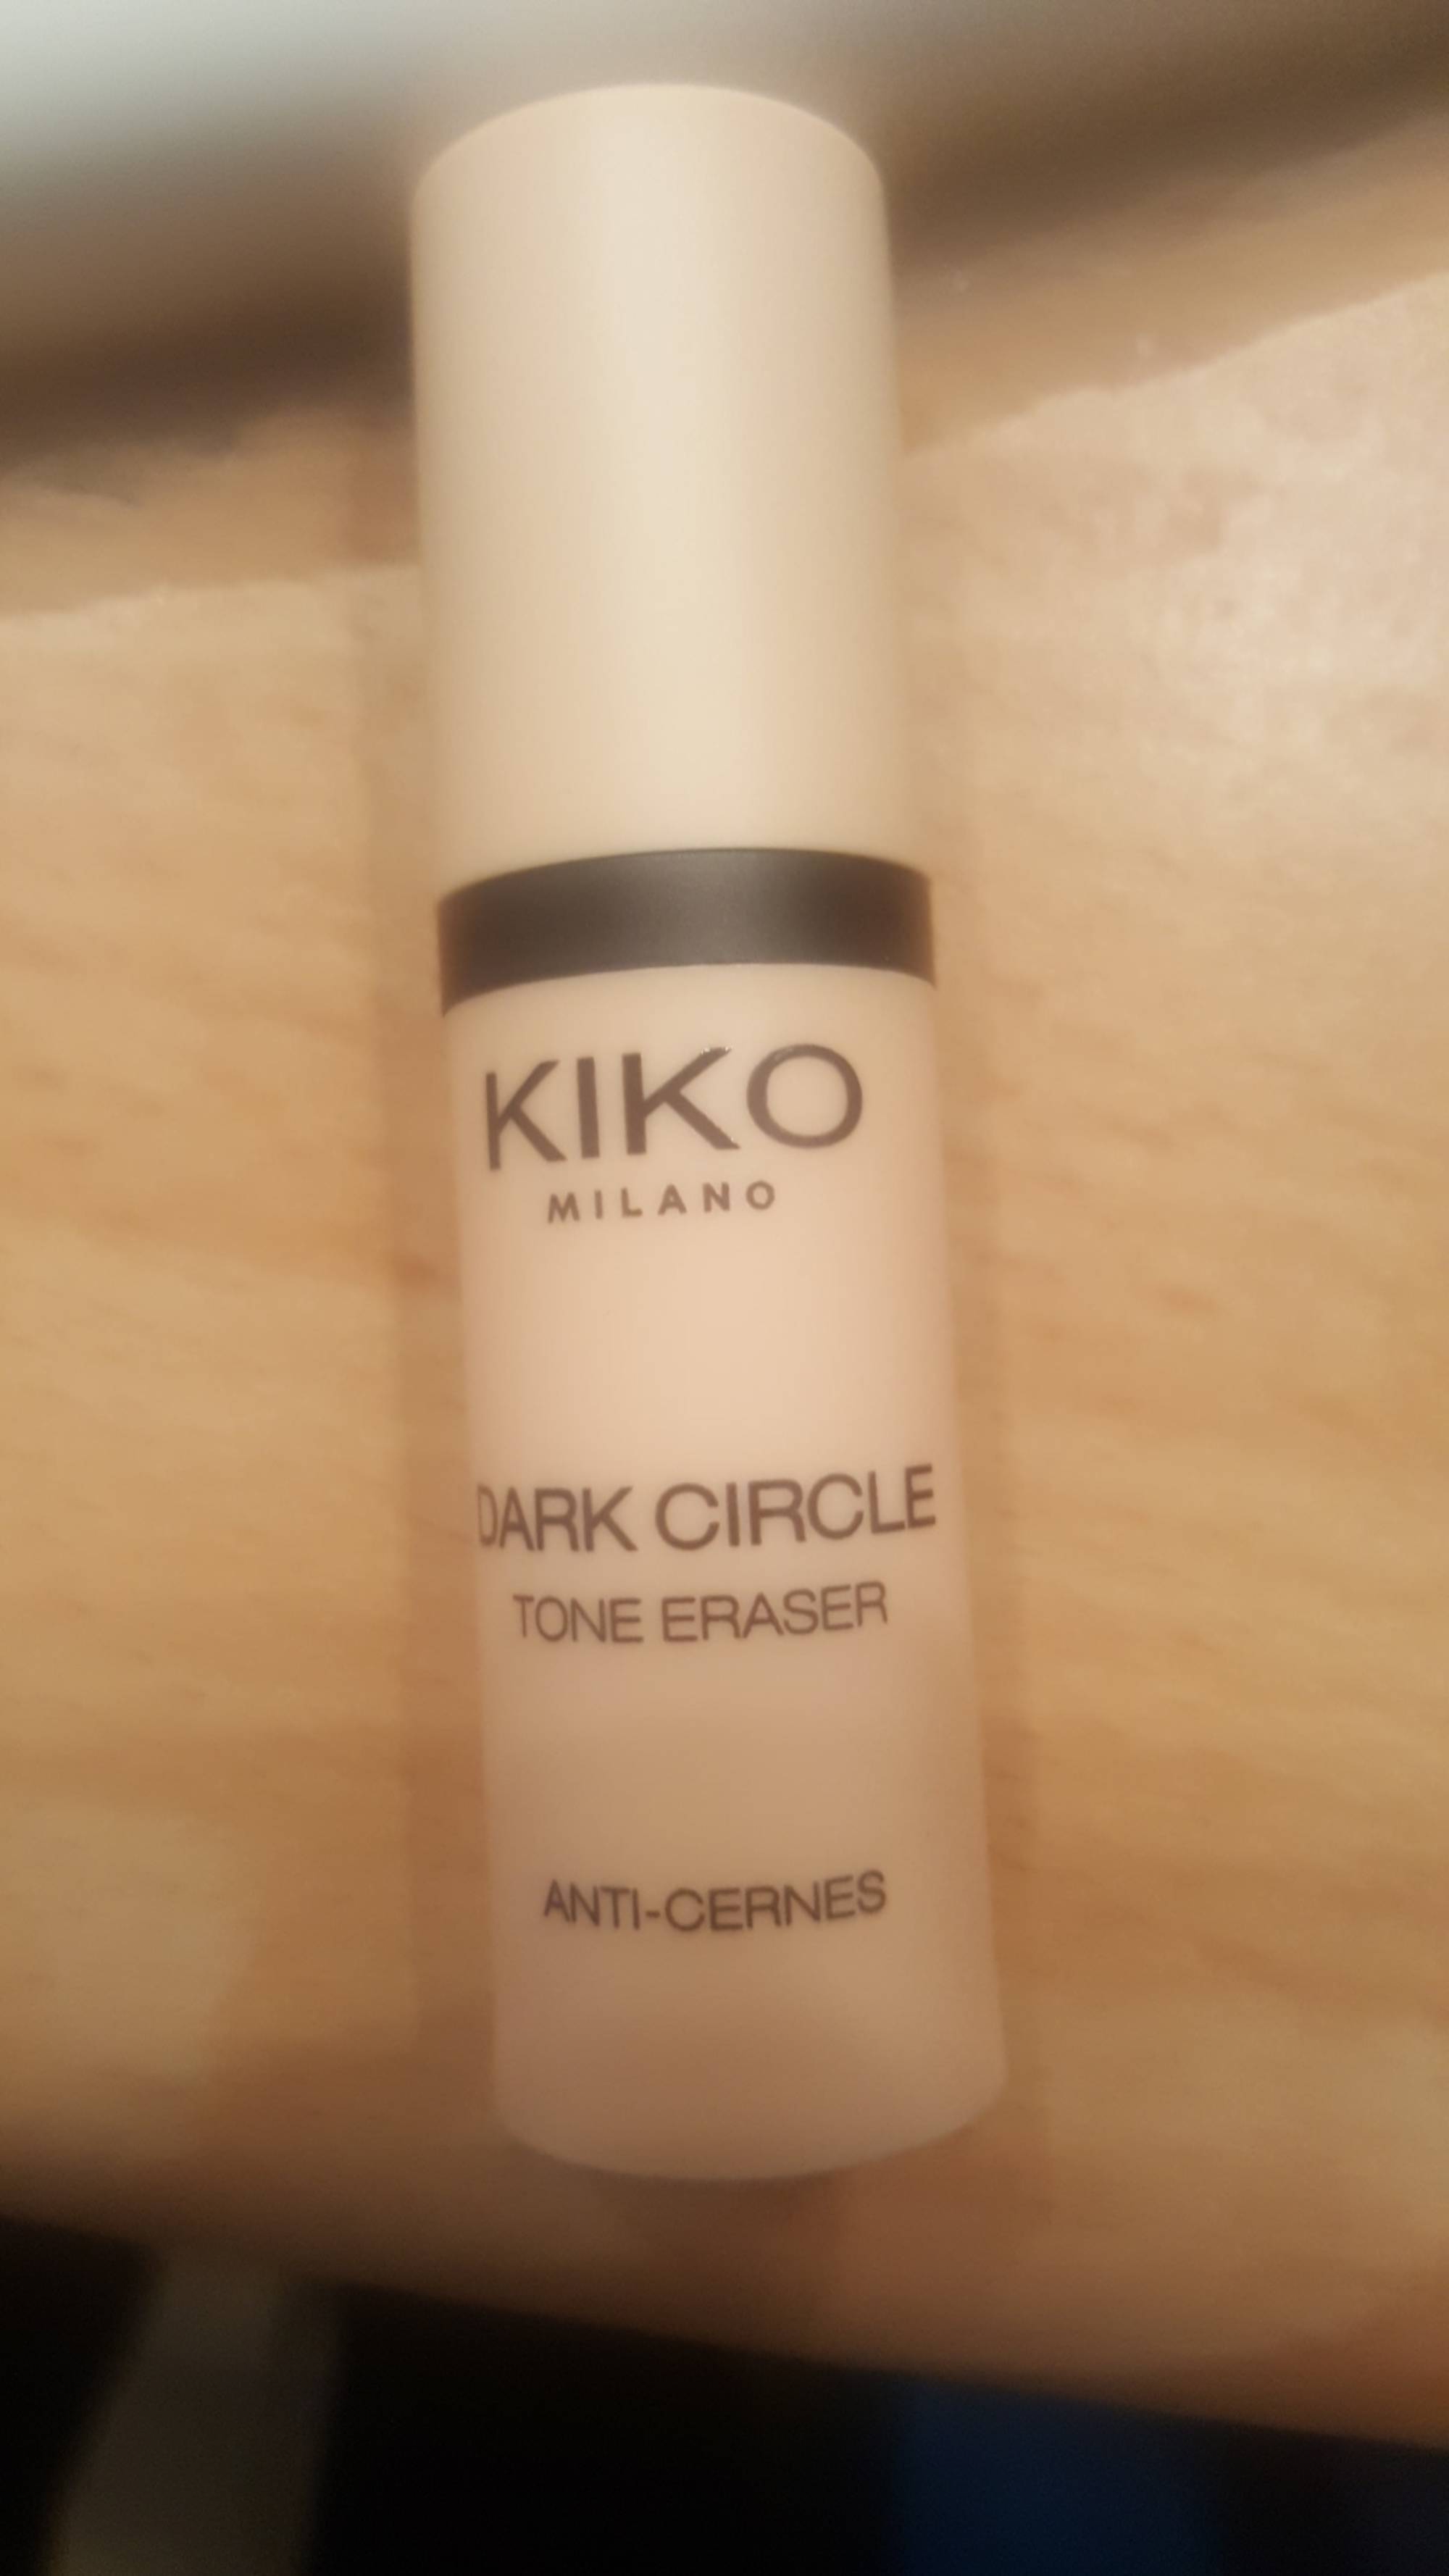 KIKO - Dark circle tone eraser anti-cernes